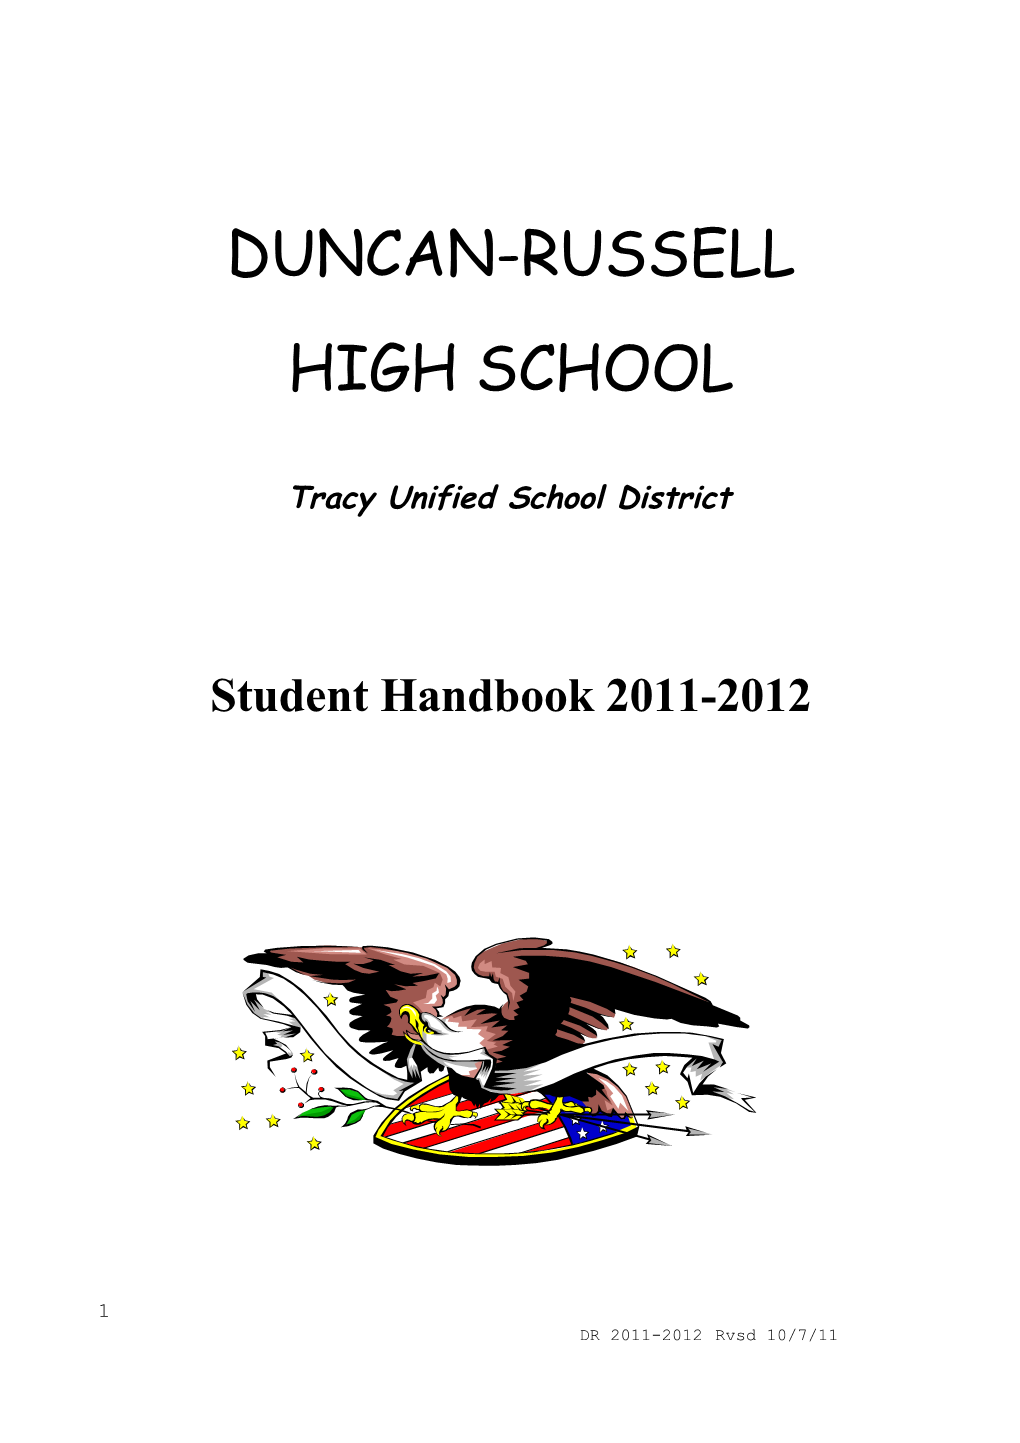 Duncan-Russell High School Staff